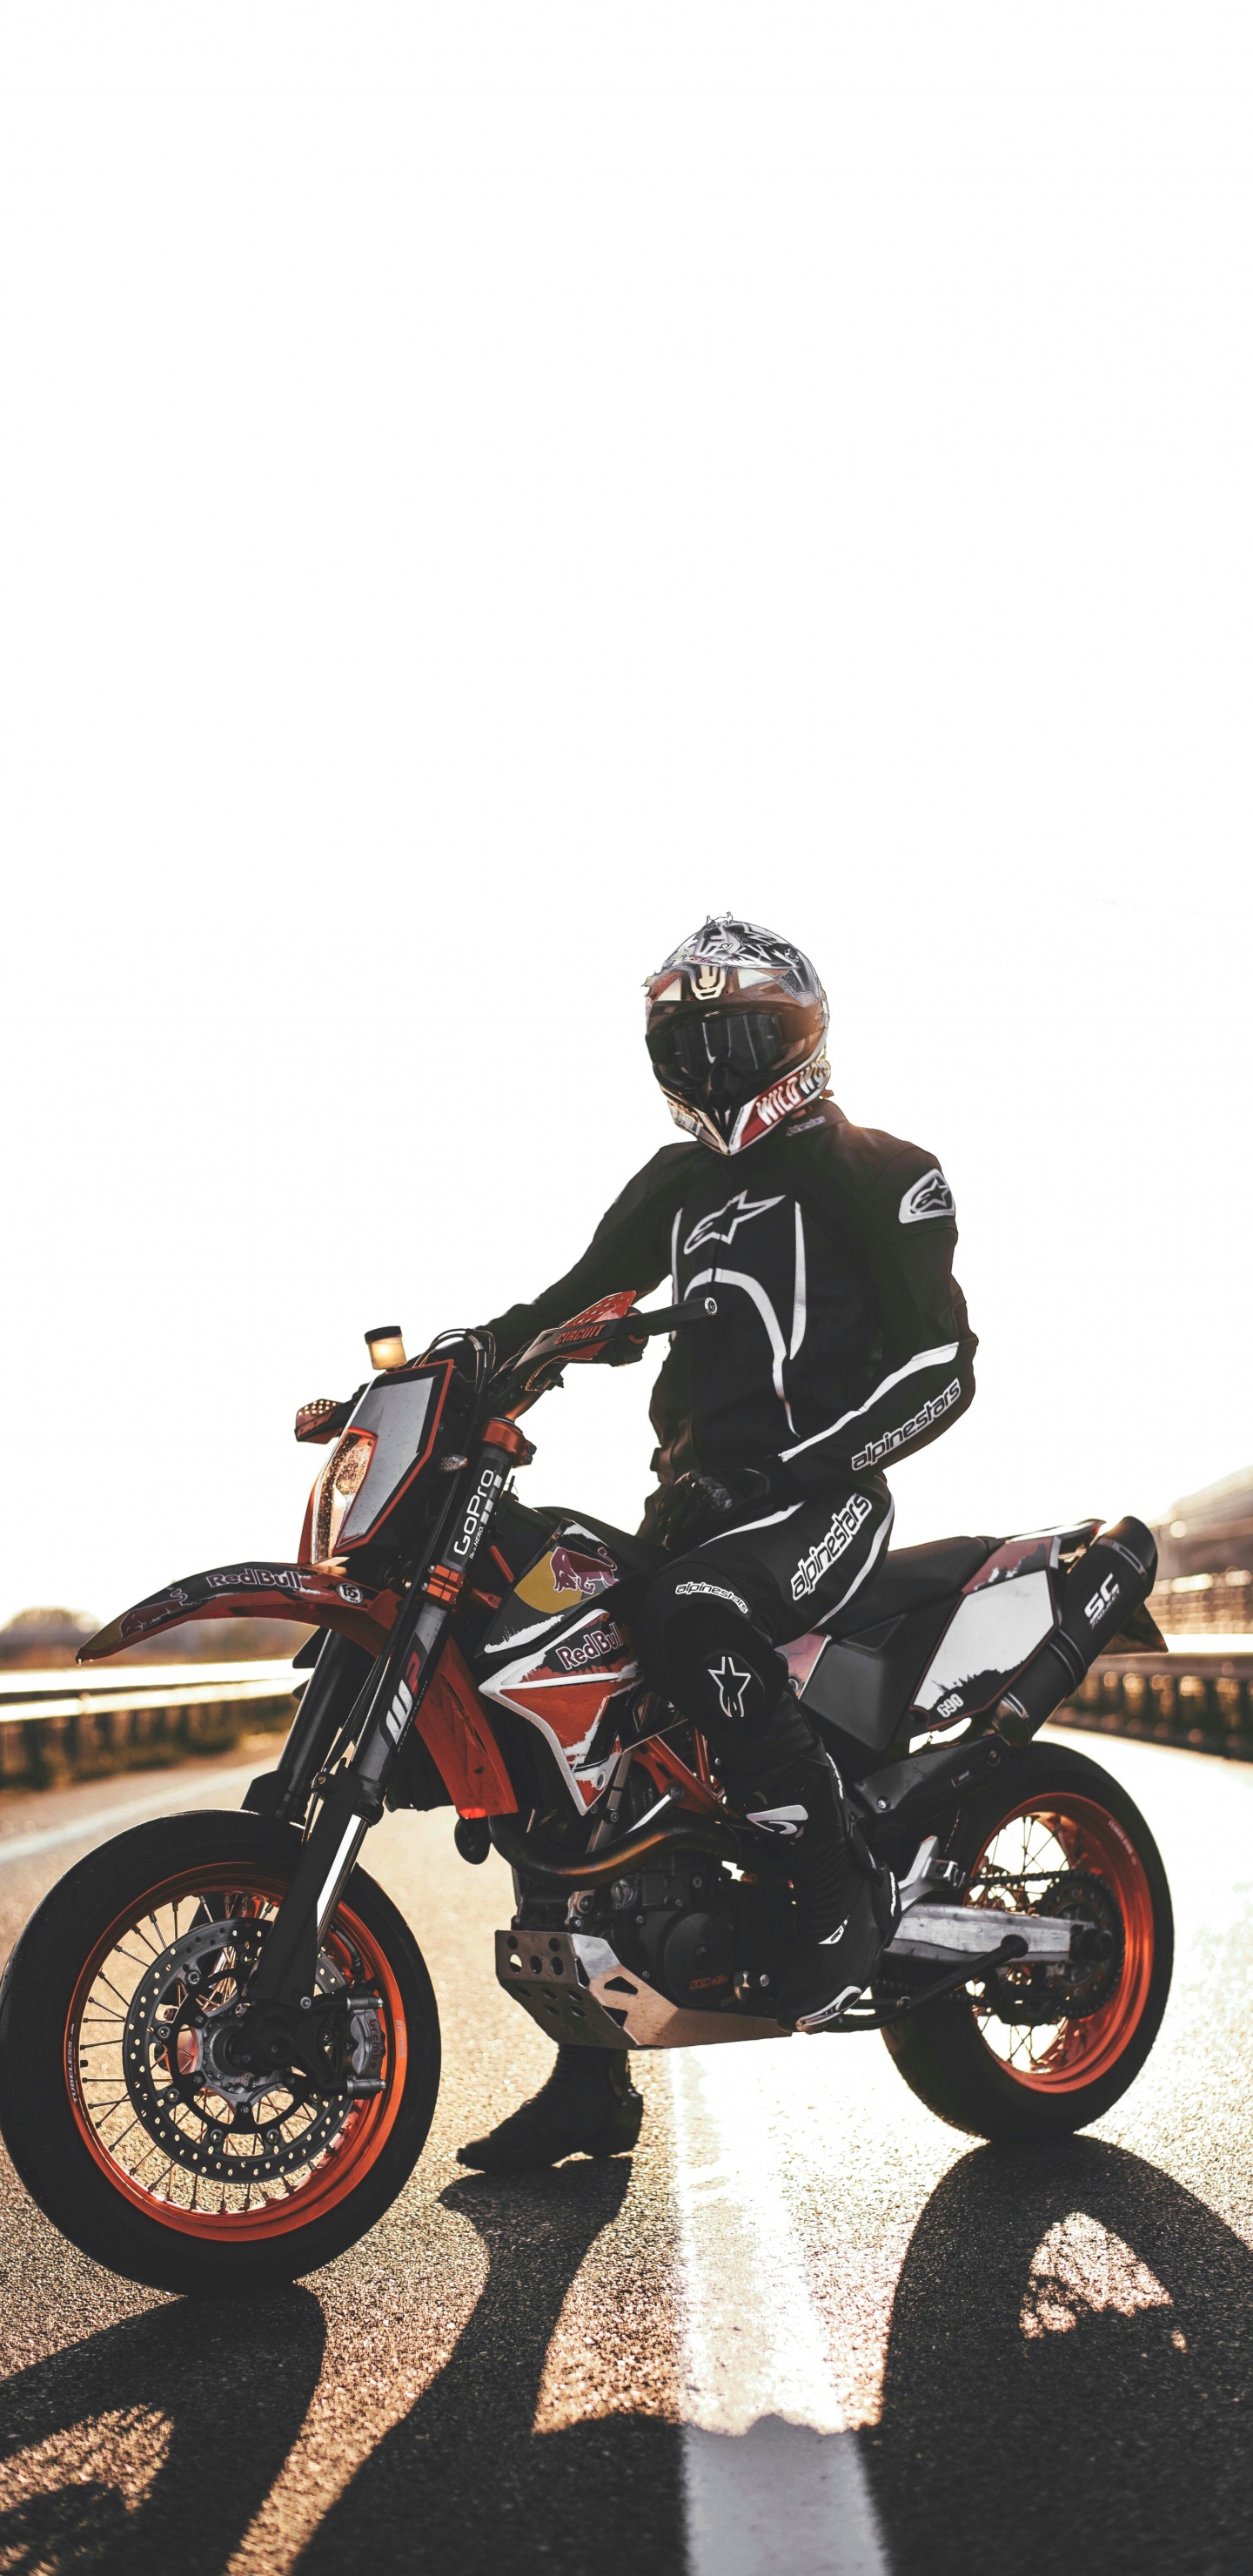 摩托车头盔, 滑胎, 摩托车越野赛, 摩托车赛车, 摩托车手 壁纸 1440x2960 允许